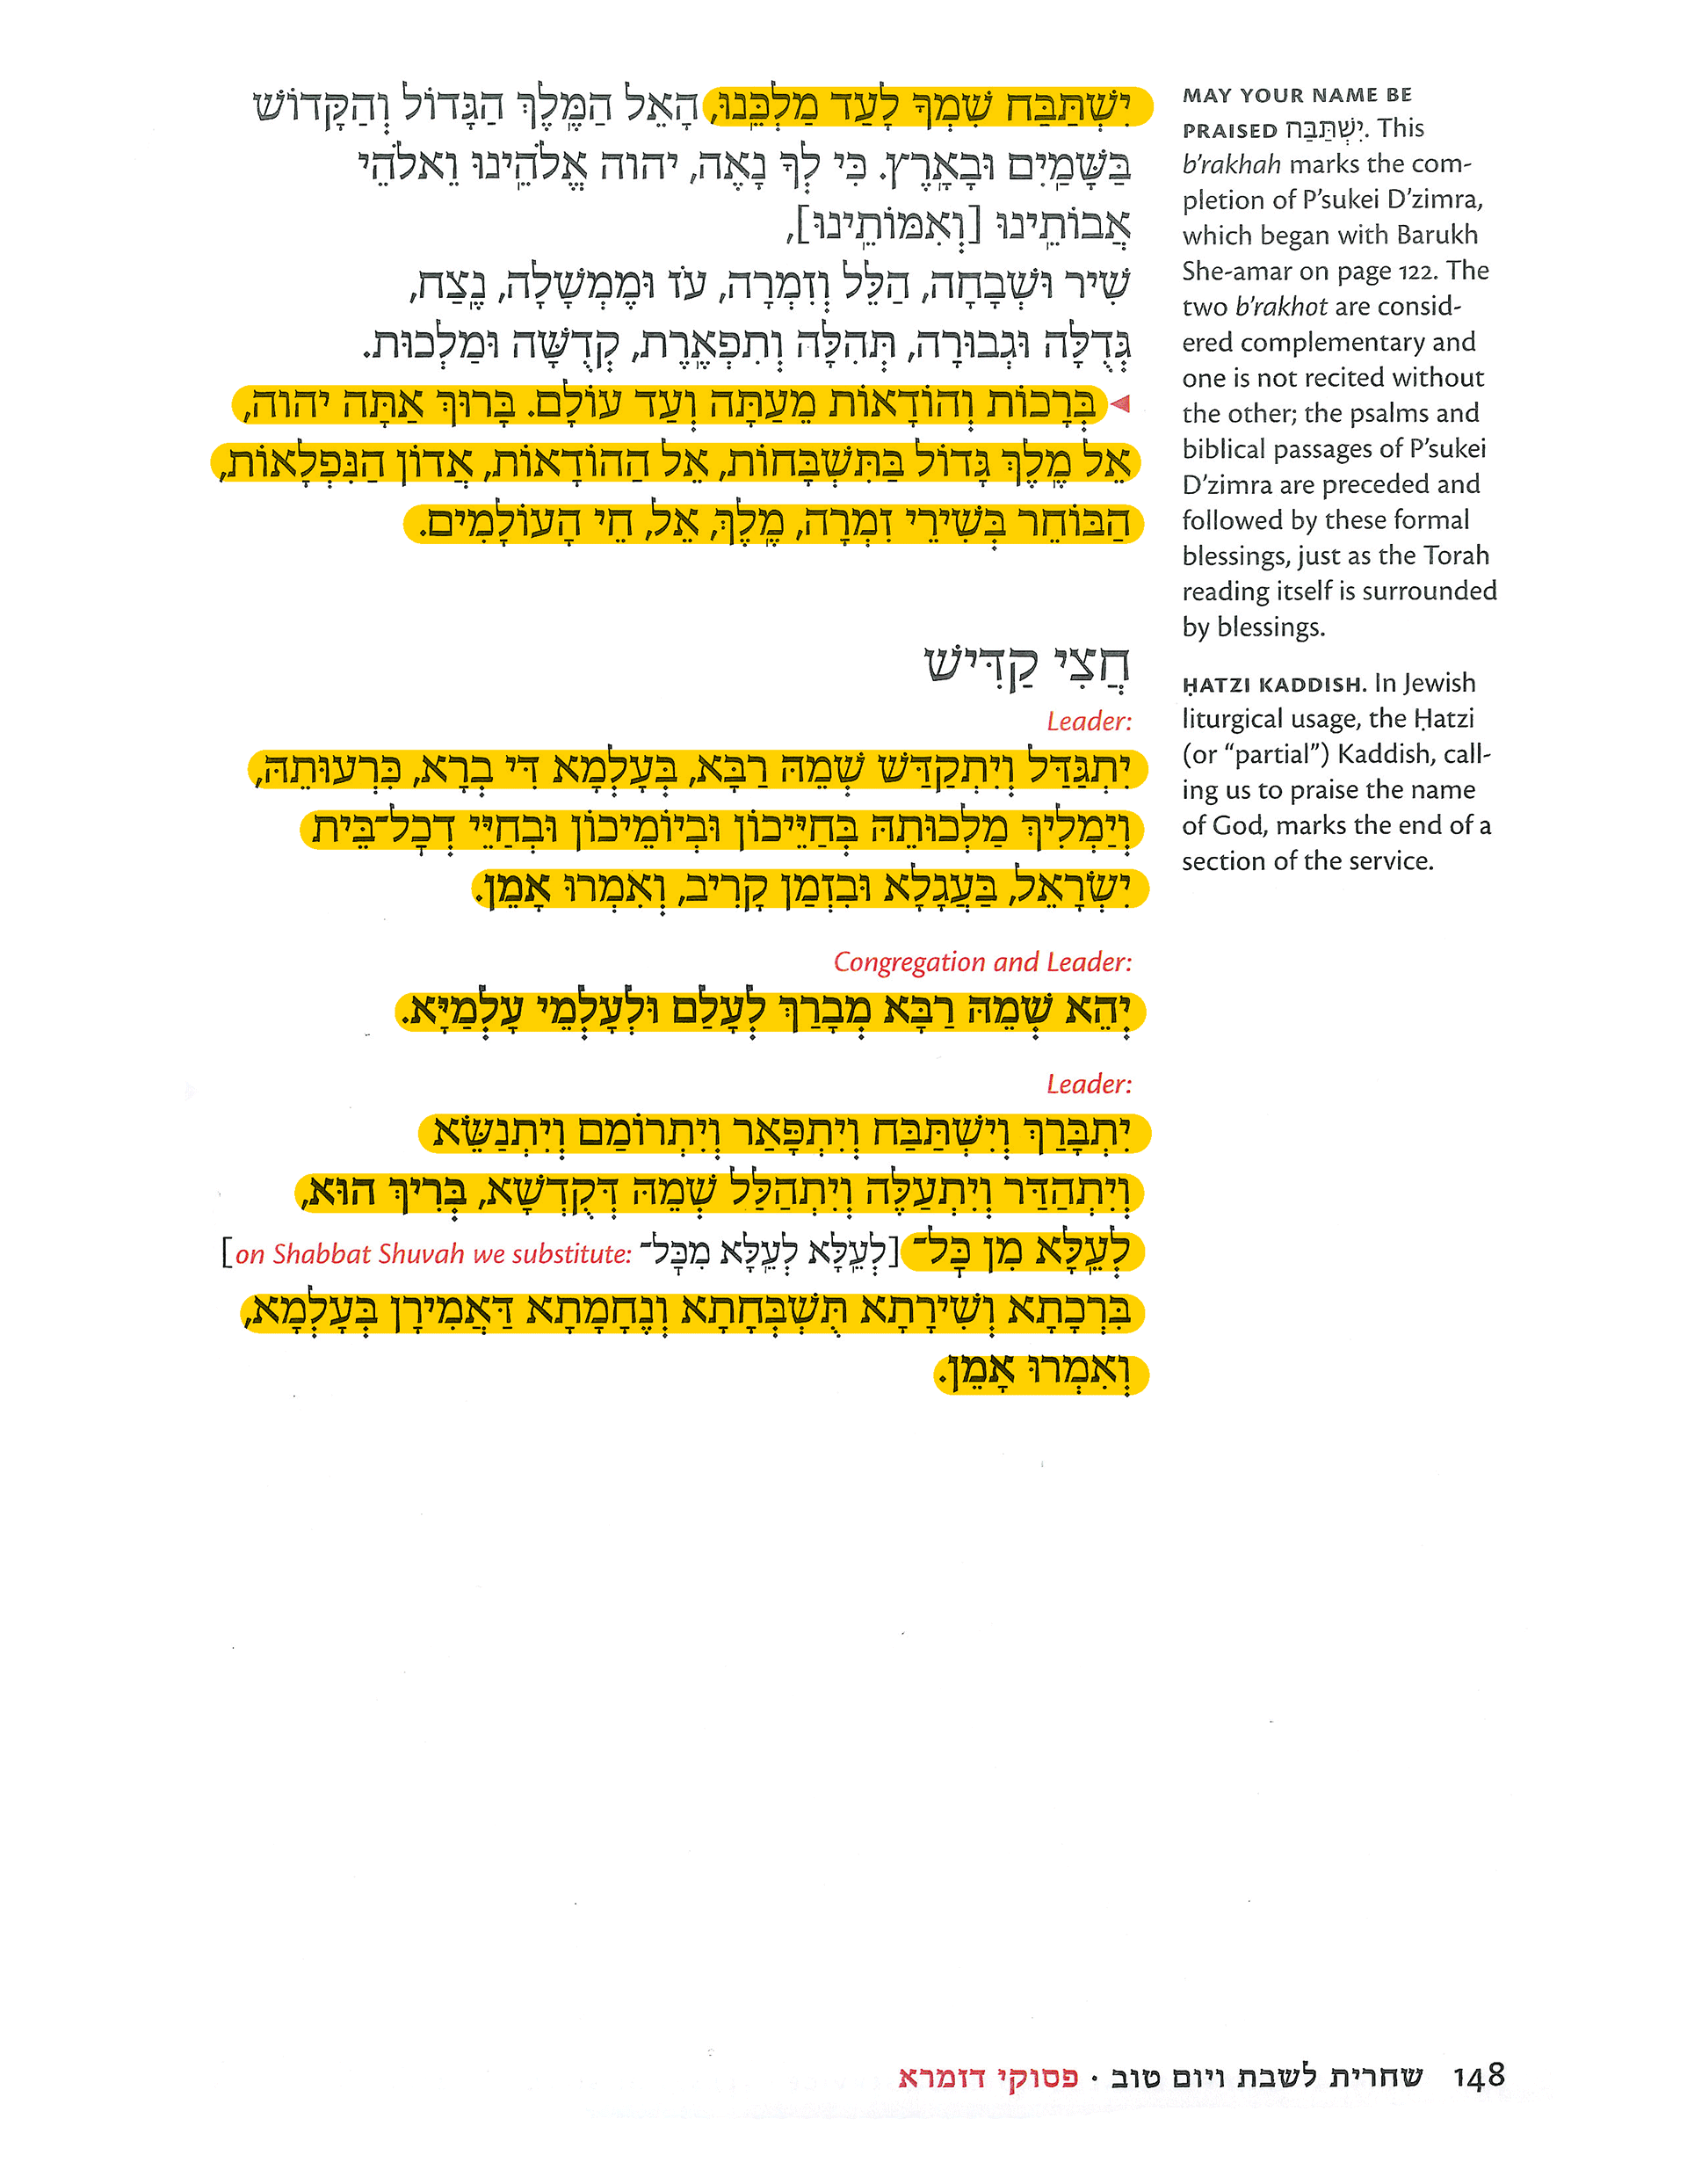 Page 148 Yishtabach - Chatzi Kaddish